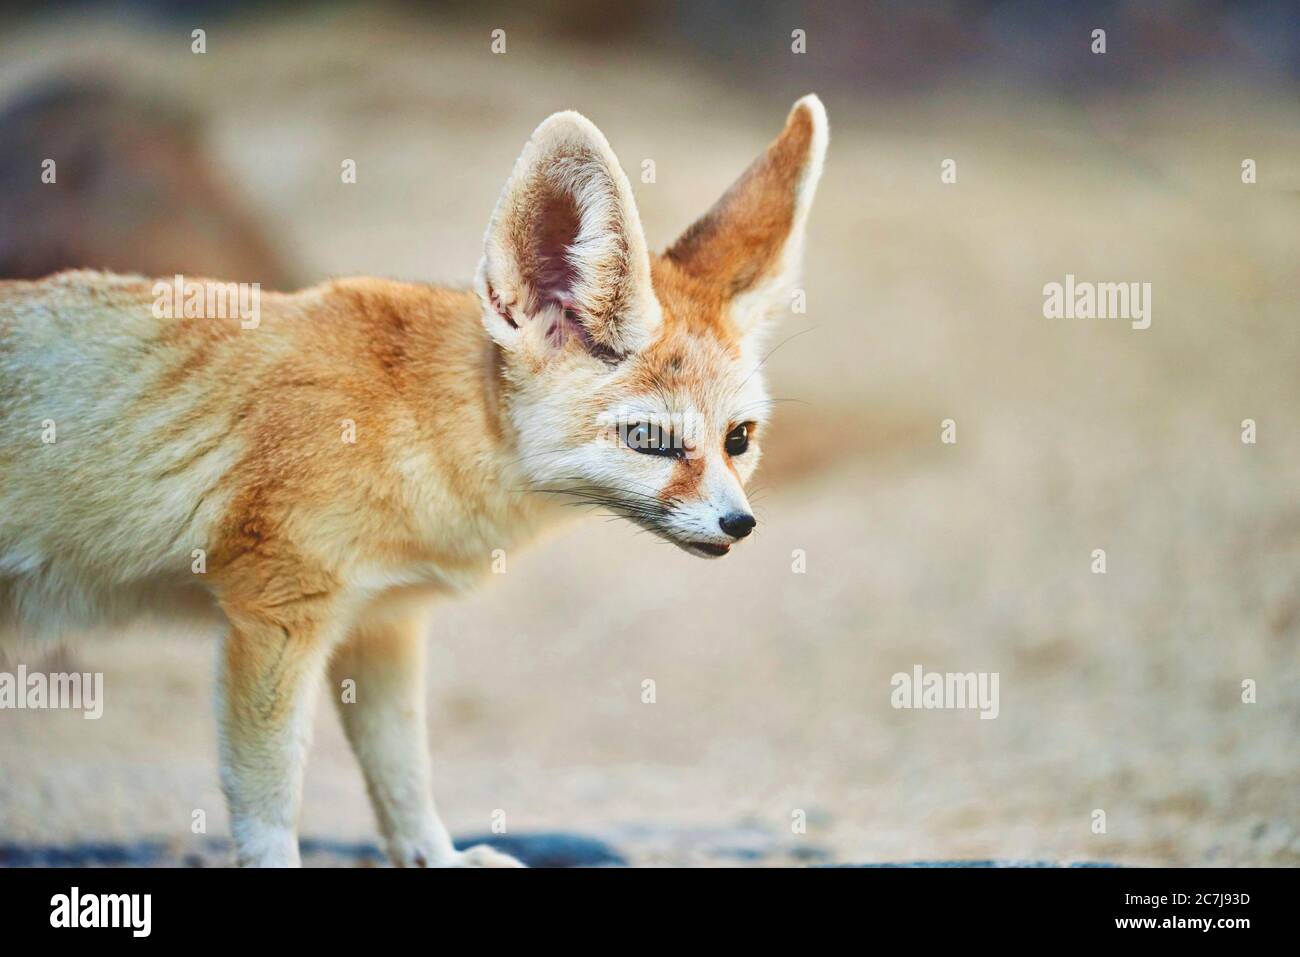 fennec fox (Fennecus zerda, Vulpes zerda), portrait, Africa Stock Photo